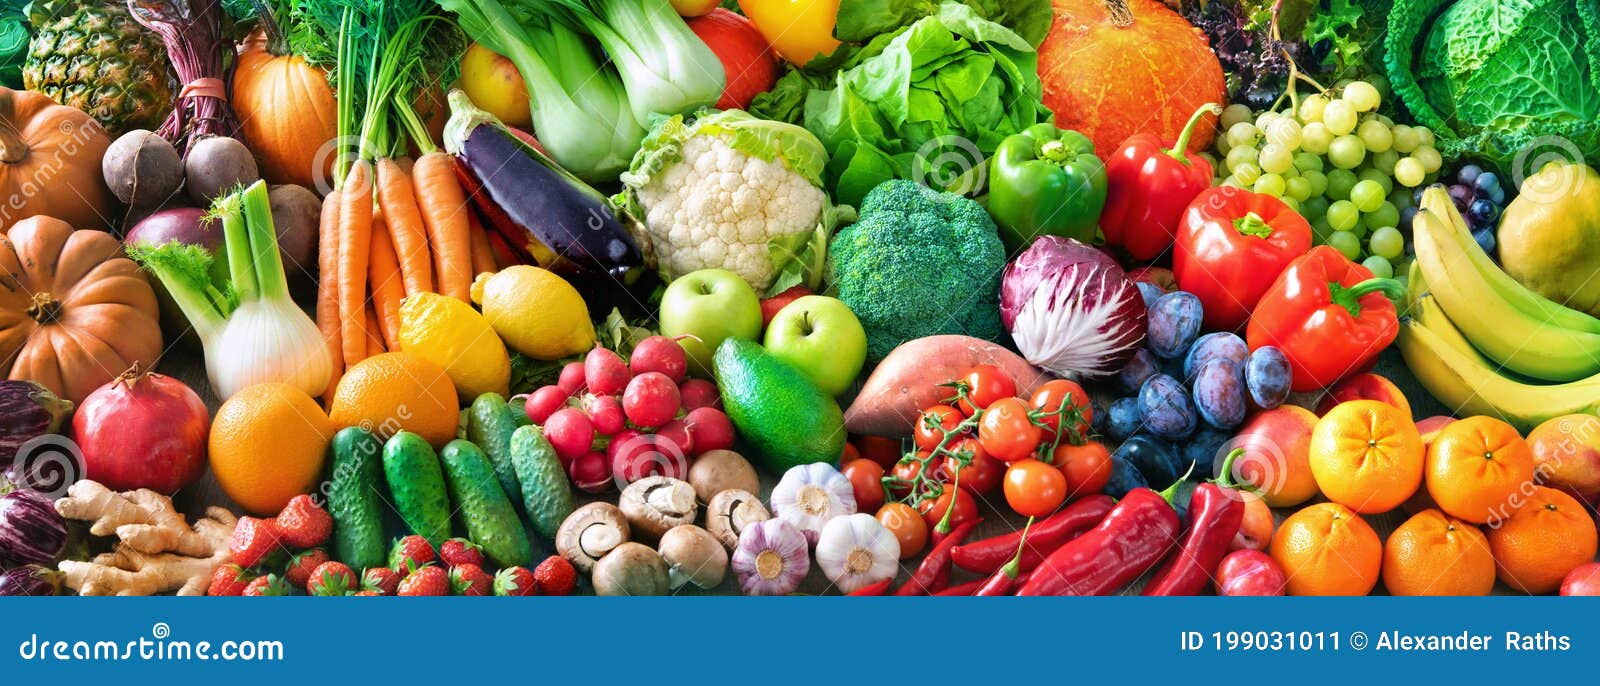 Composición Con Variedad De Verduras Y Frutas Frescas. Dieta De